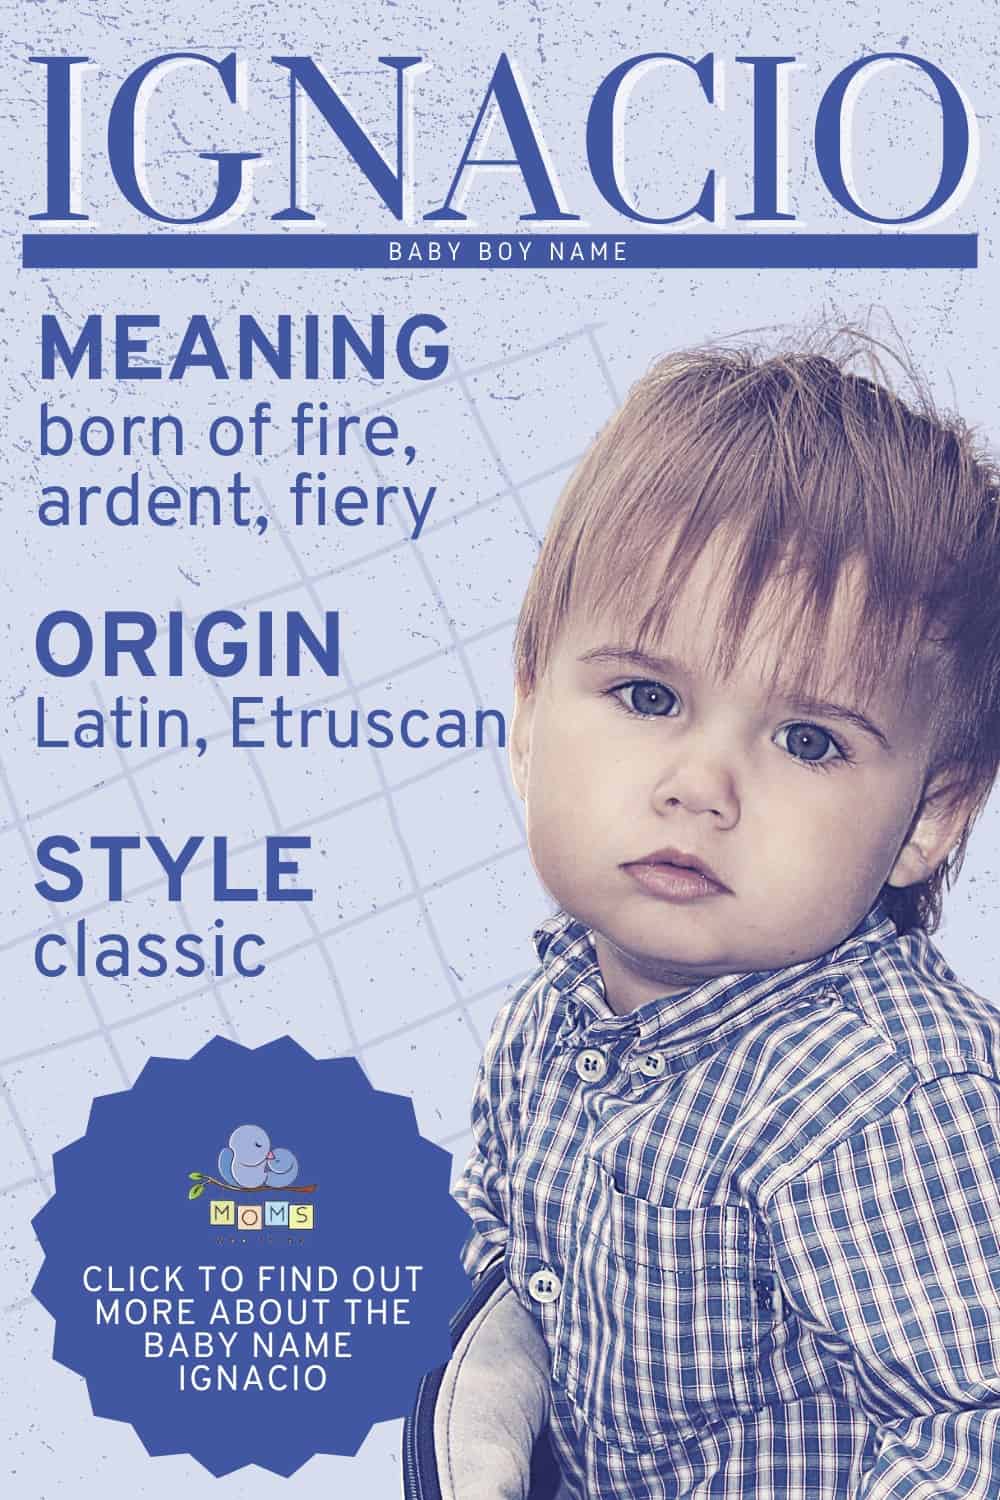 Baby name Ignacio